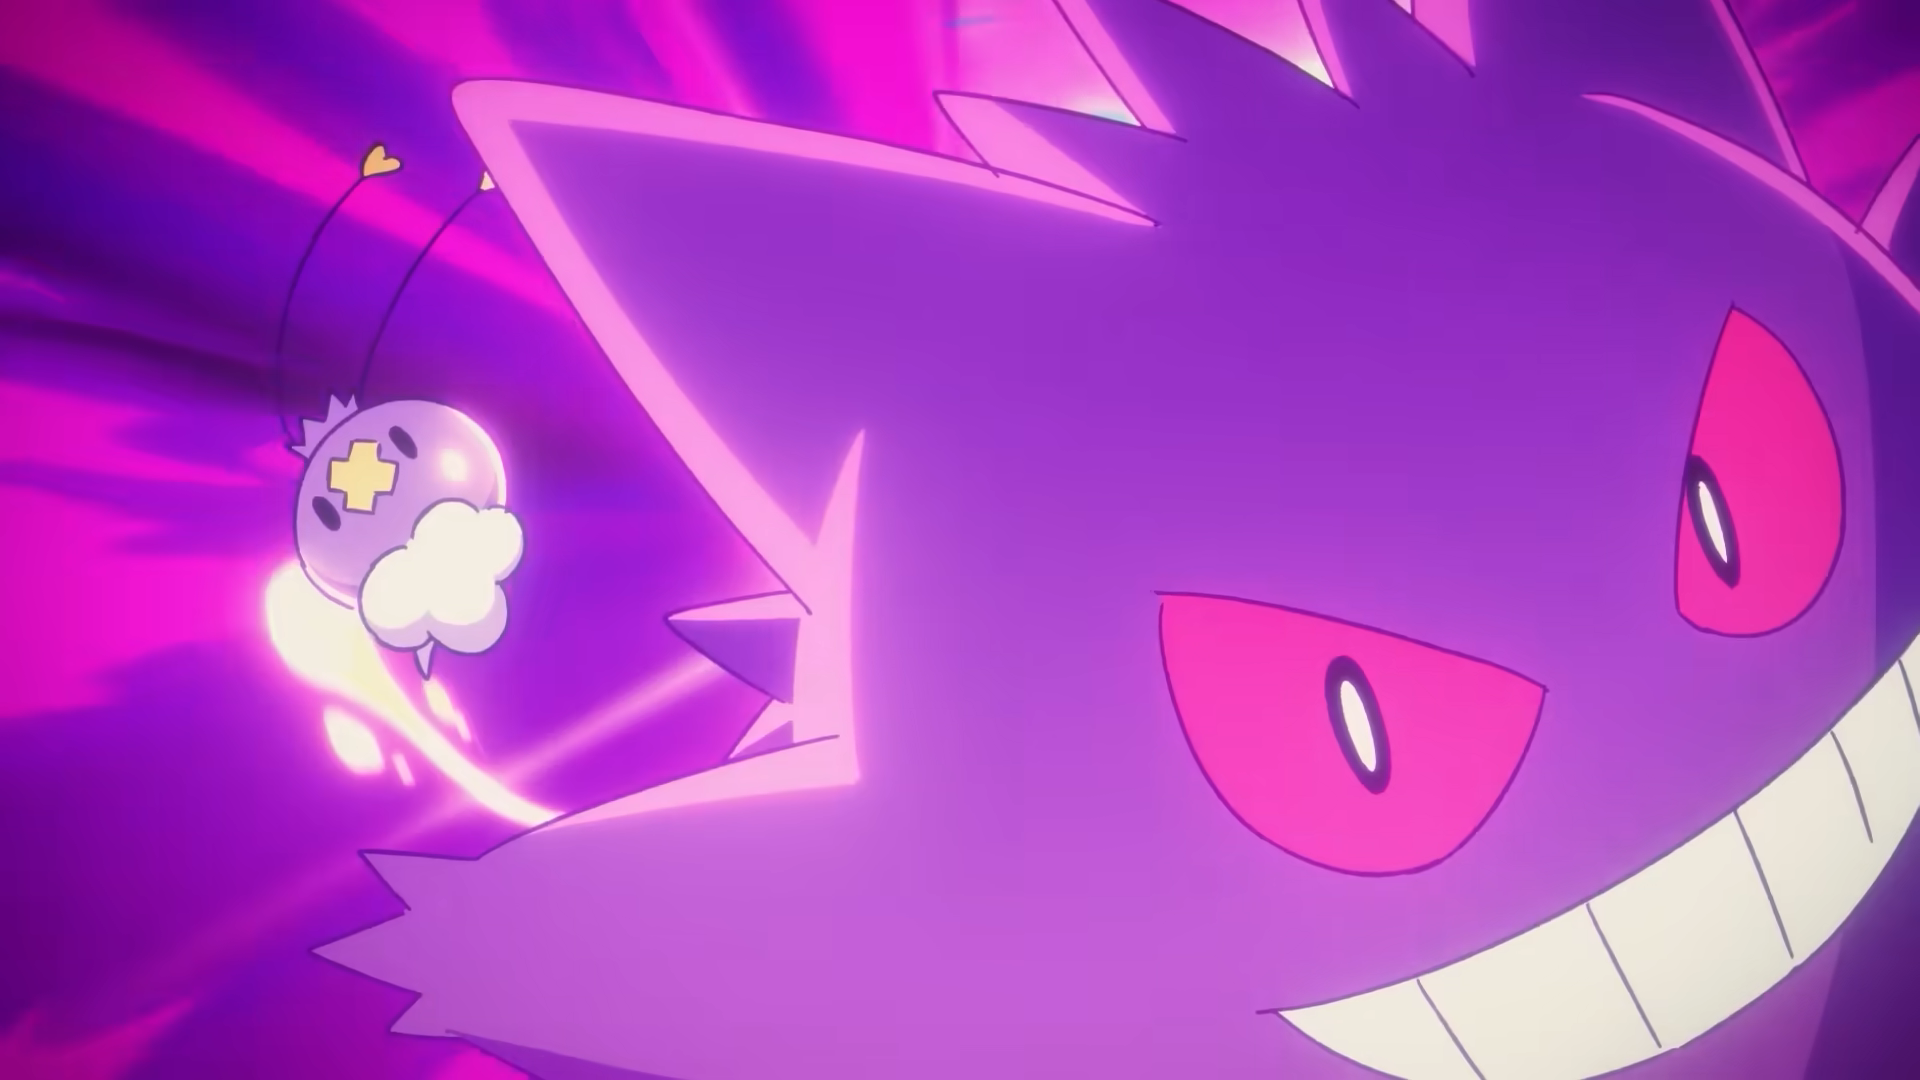 Pokémon Releases Short MV Based On Lavender Town Music